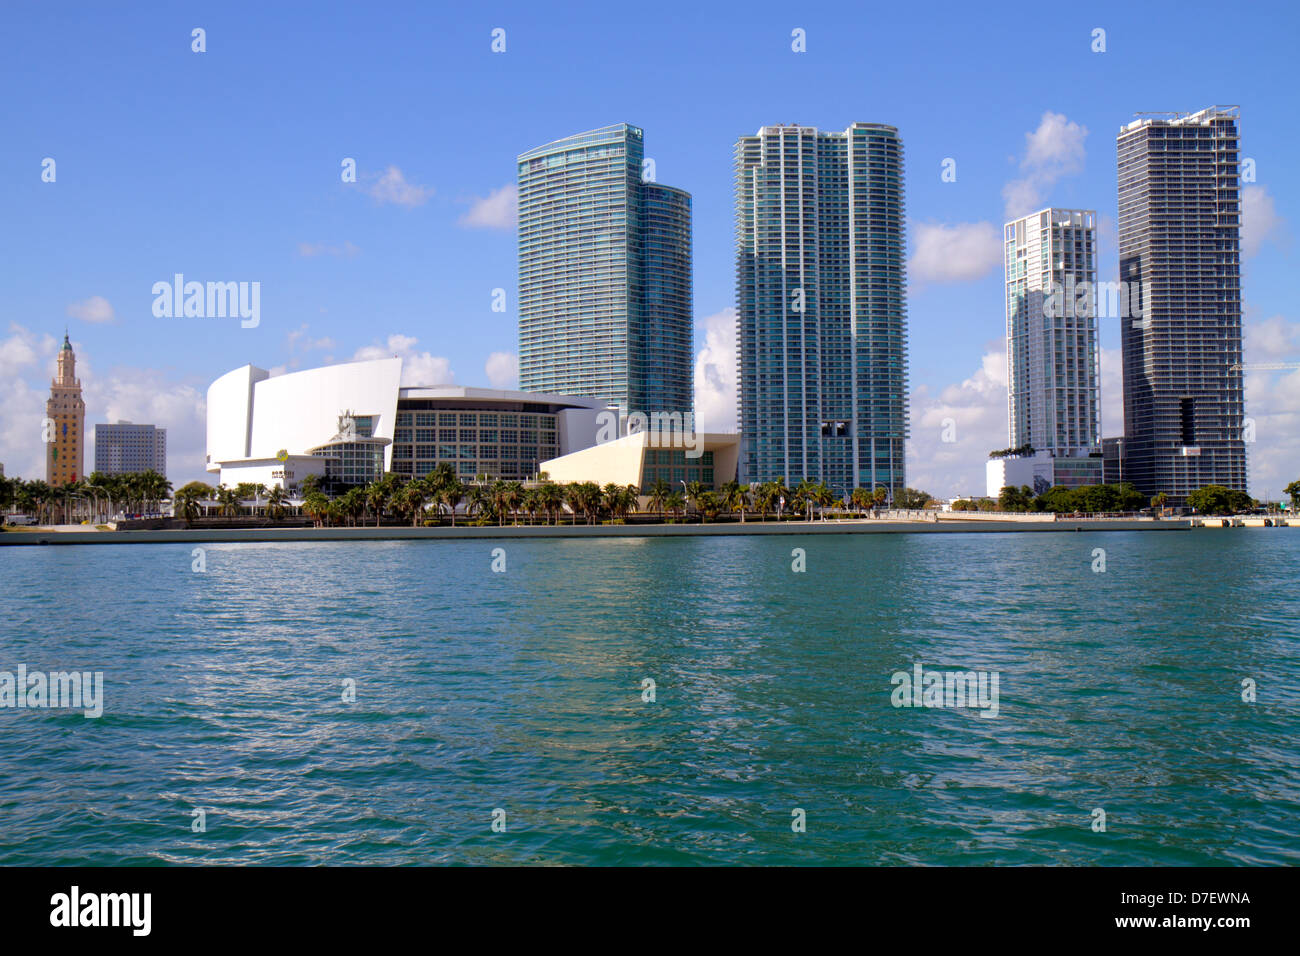 Miami Florida, Biscayne Bay, Biscayne Boulevard, skyline, acqua, grattacieli, grattacieli grattacieli di alto livello edificio edifici condominio residenziale ap Foto Stock